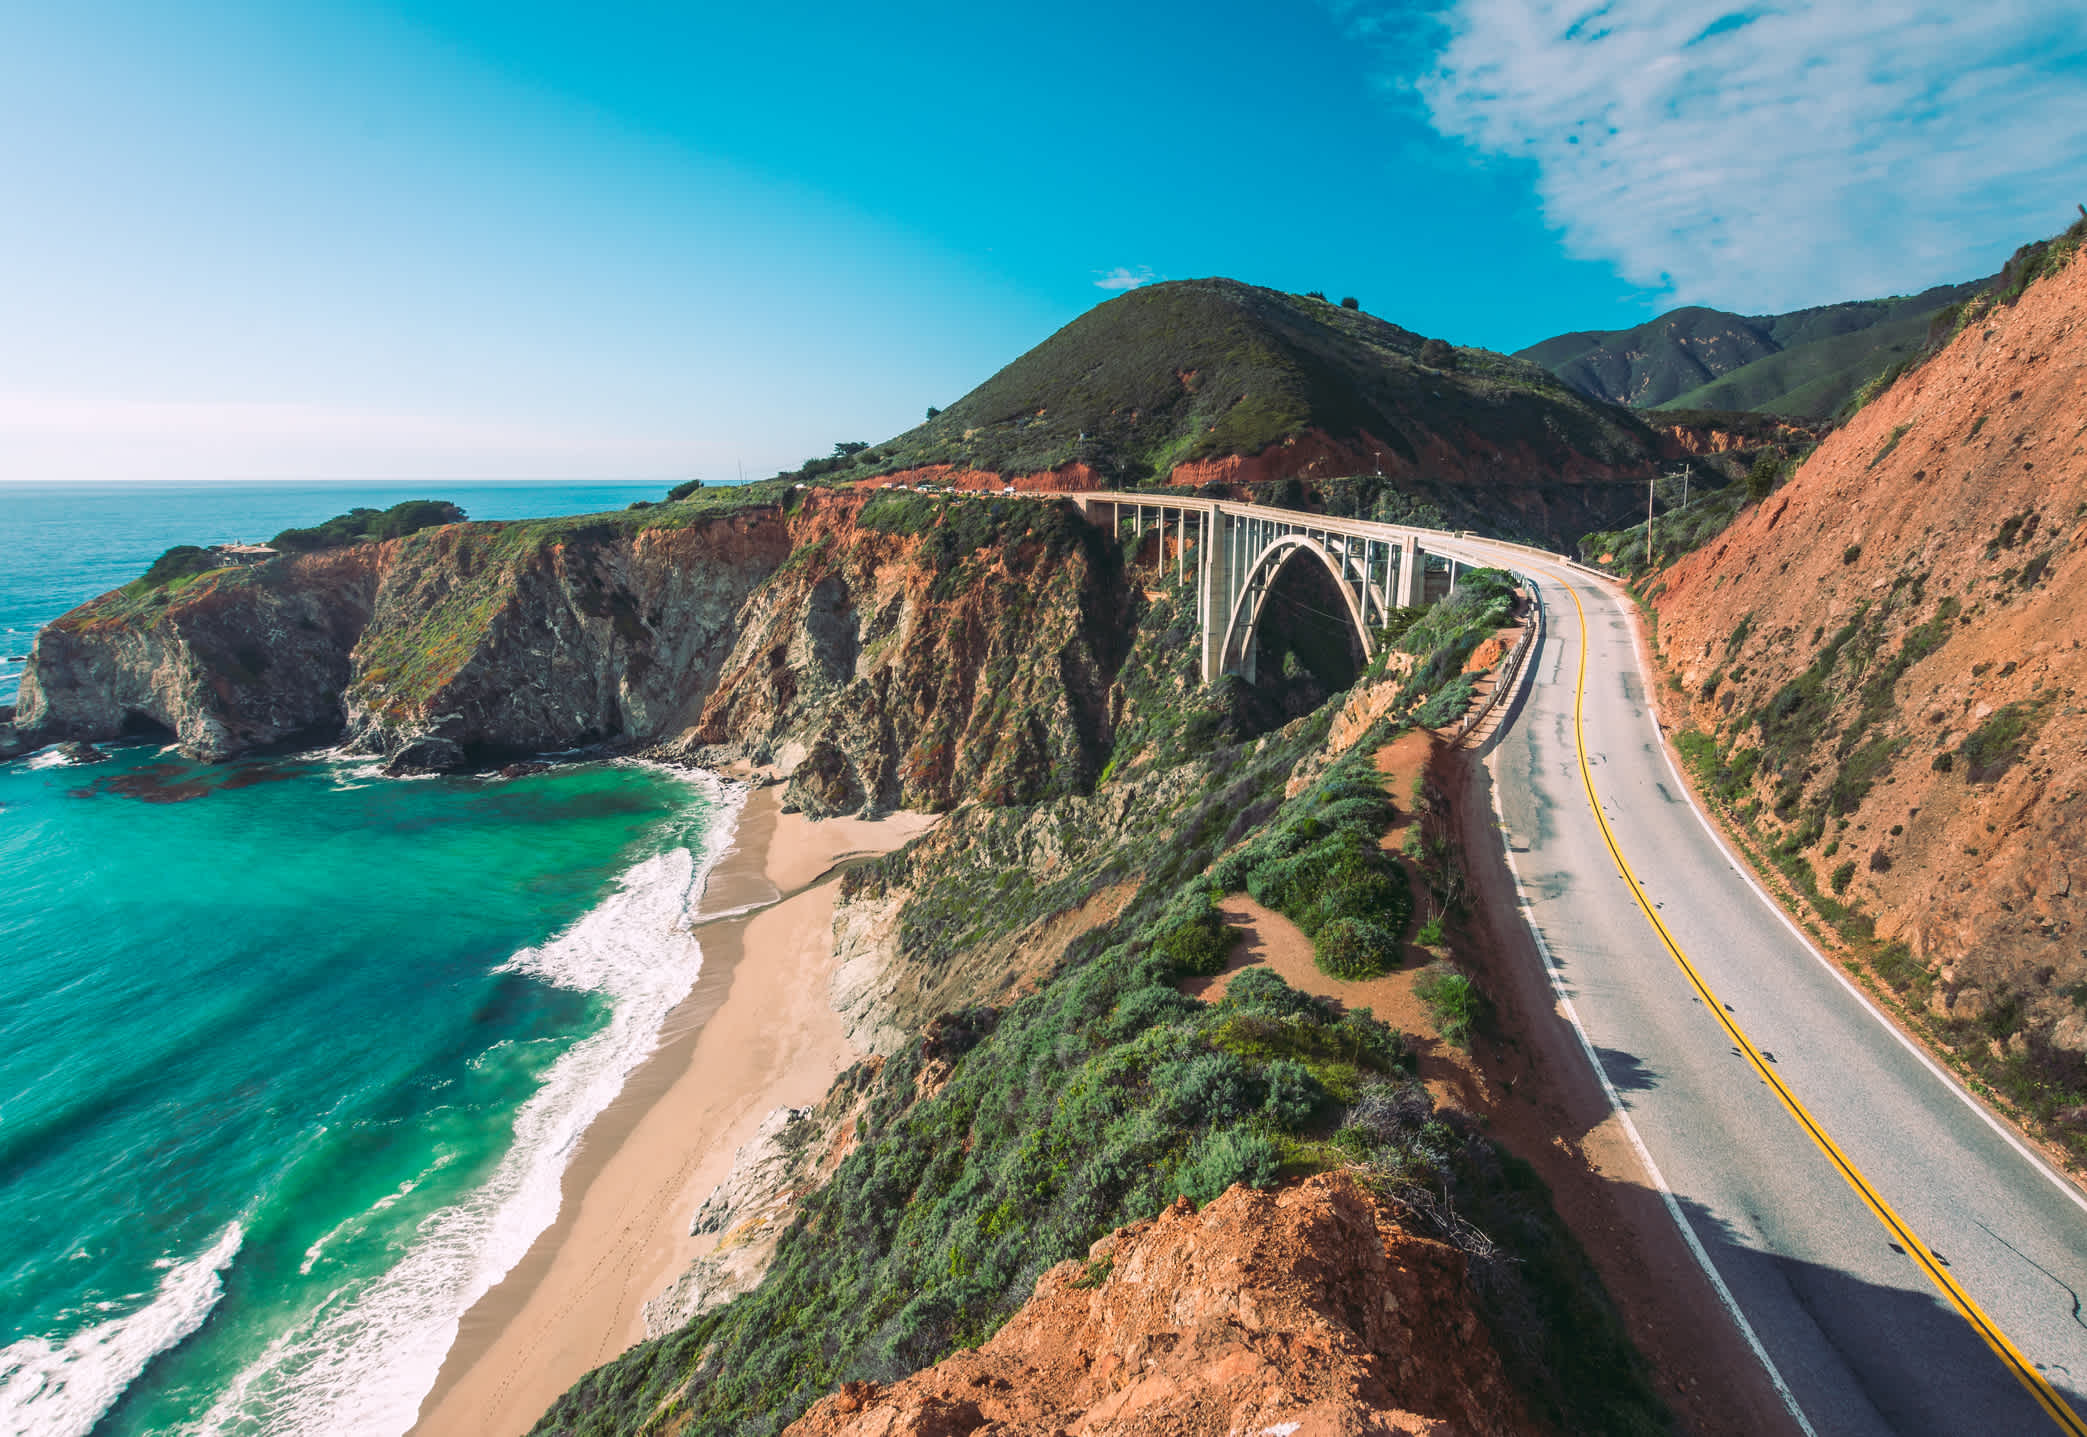 La pacific Highway vue d'en haut longeant la côte californienne